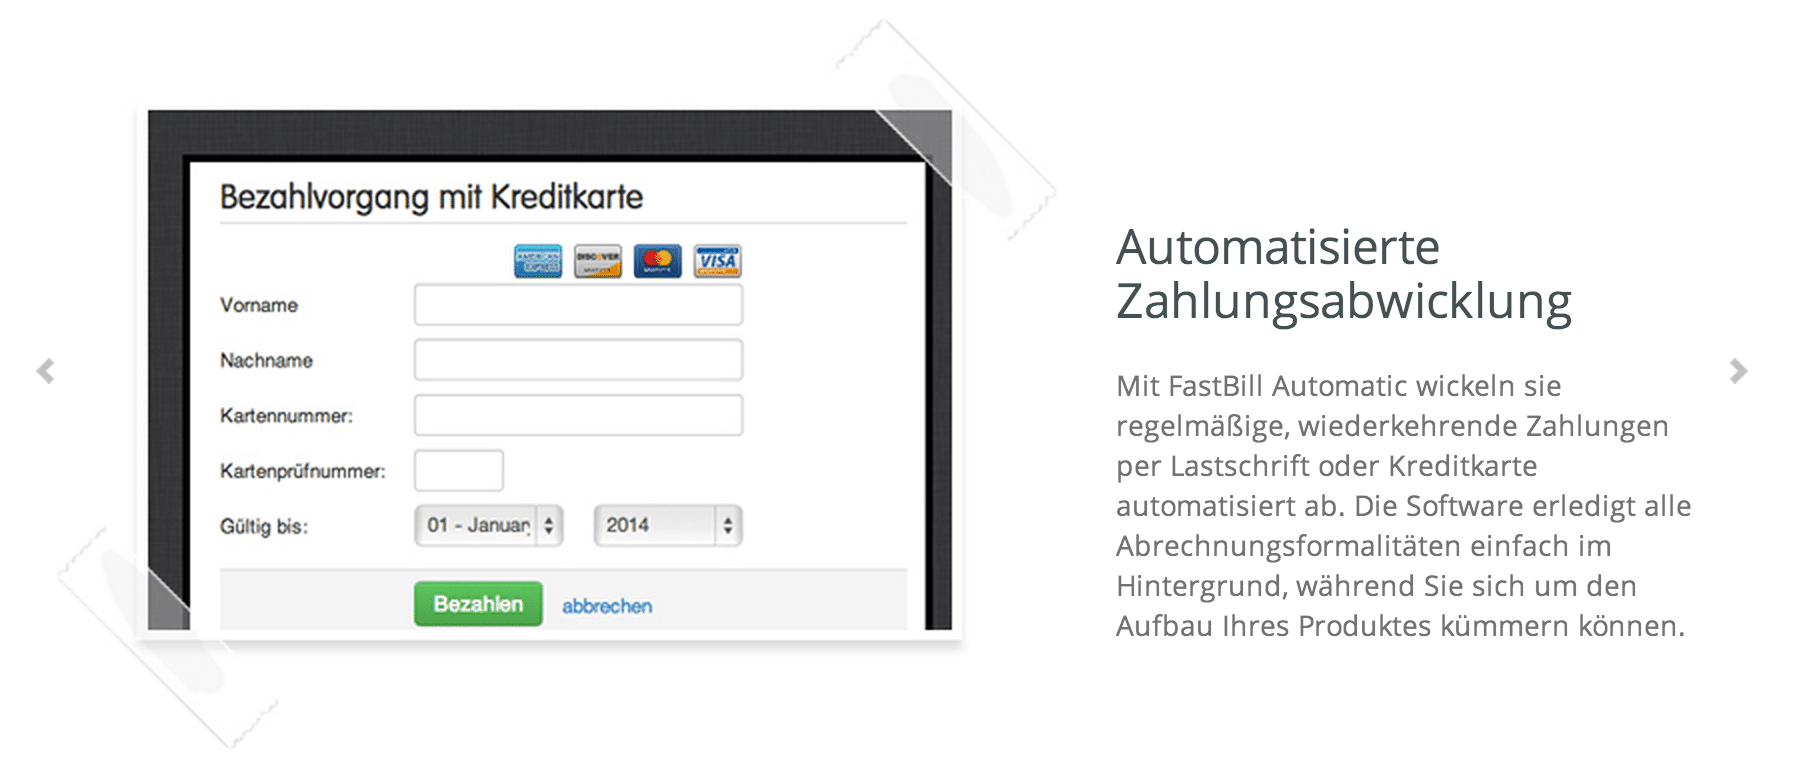 automatisierte Zahlungsabwicklung Fastbill automatic